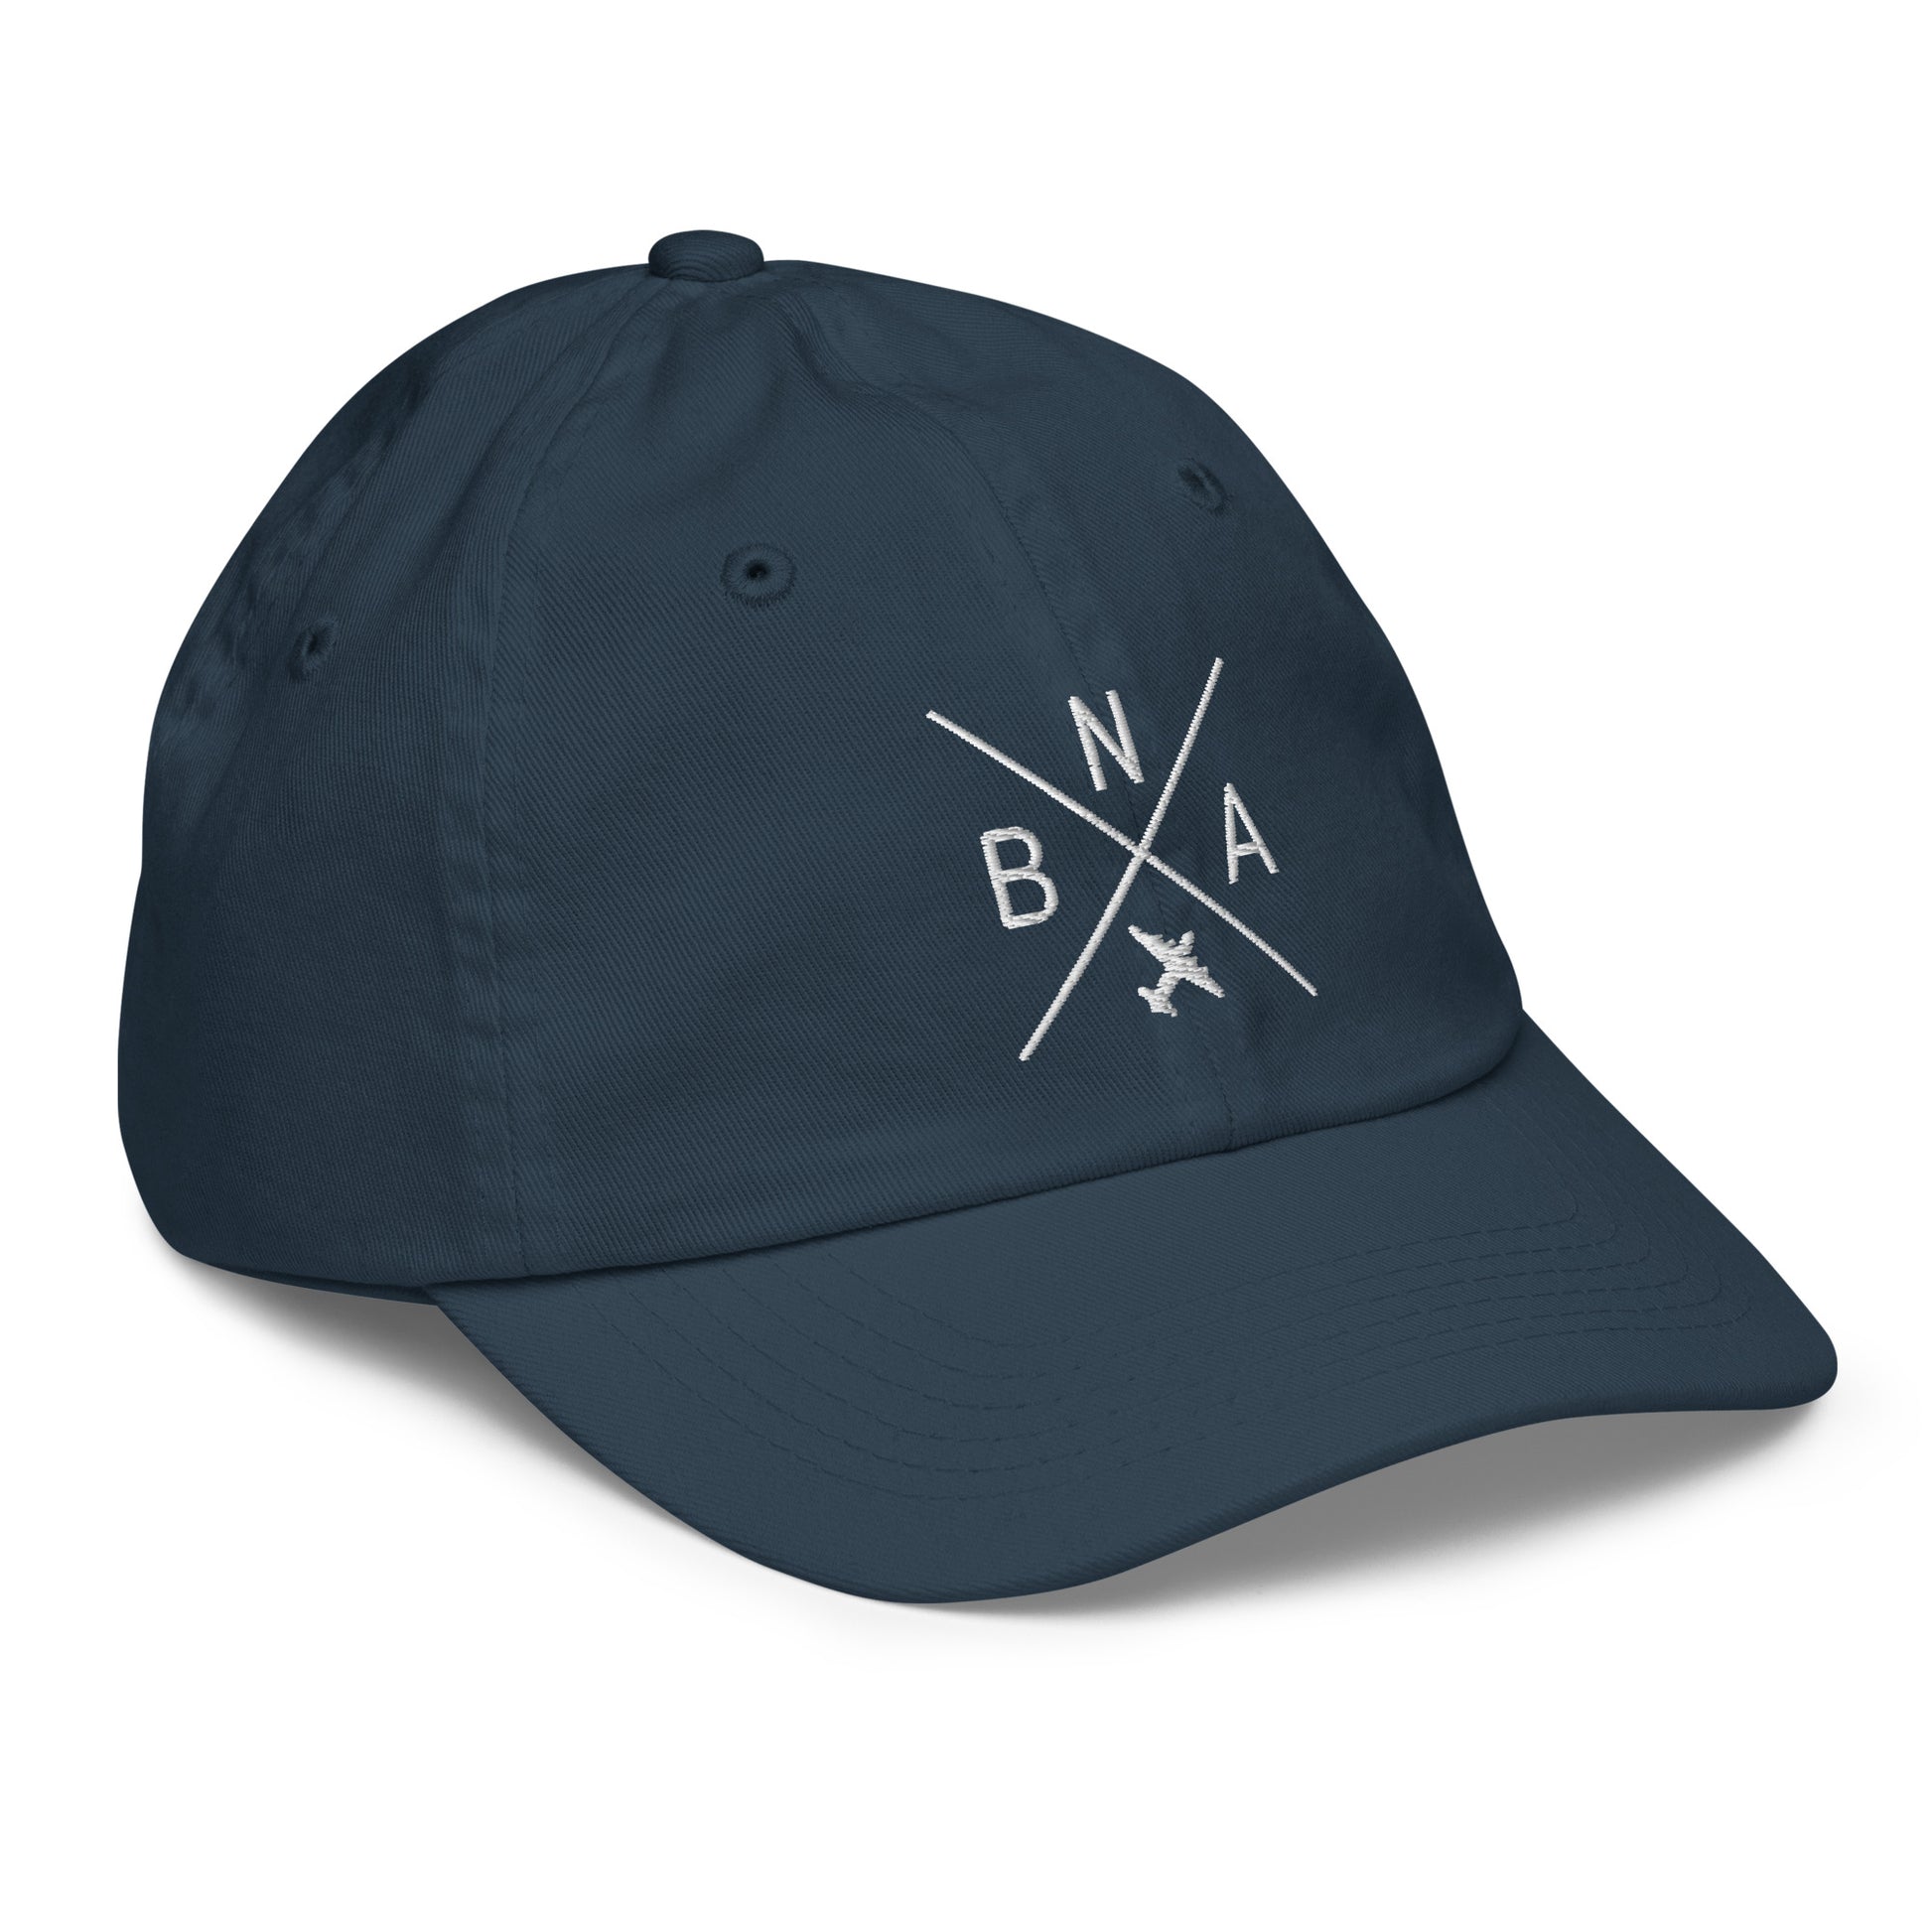 Crossed-X Kid's Baseball Cap - White • BNA Nashville • YHM Designs - Image 15